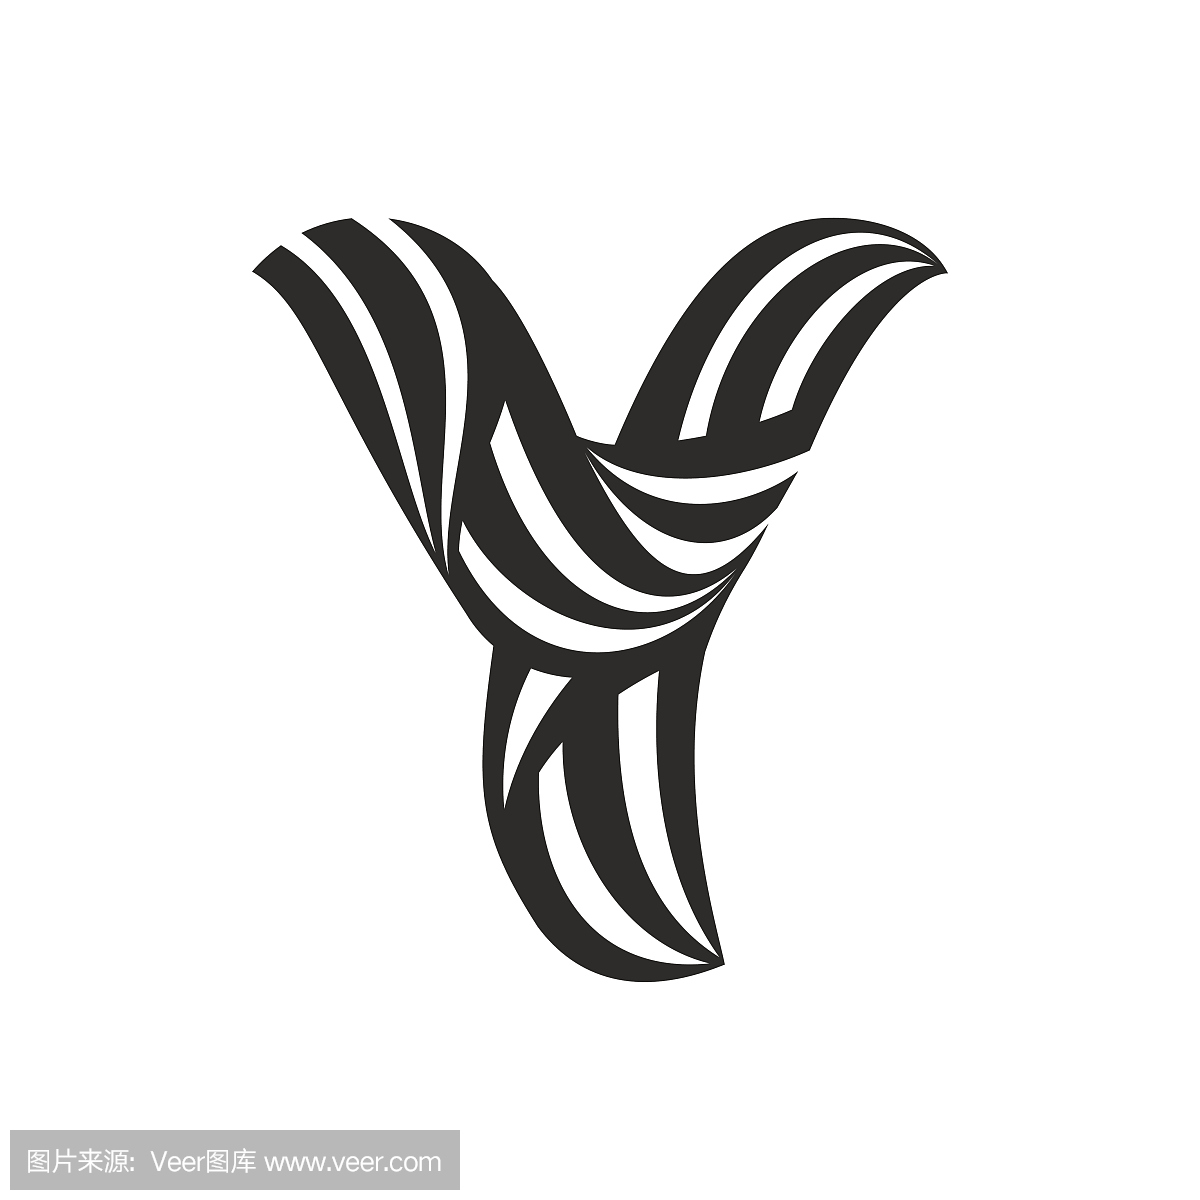 由扭曲线形成的Y字母图标。